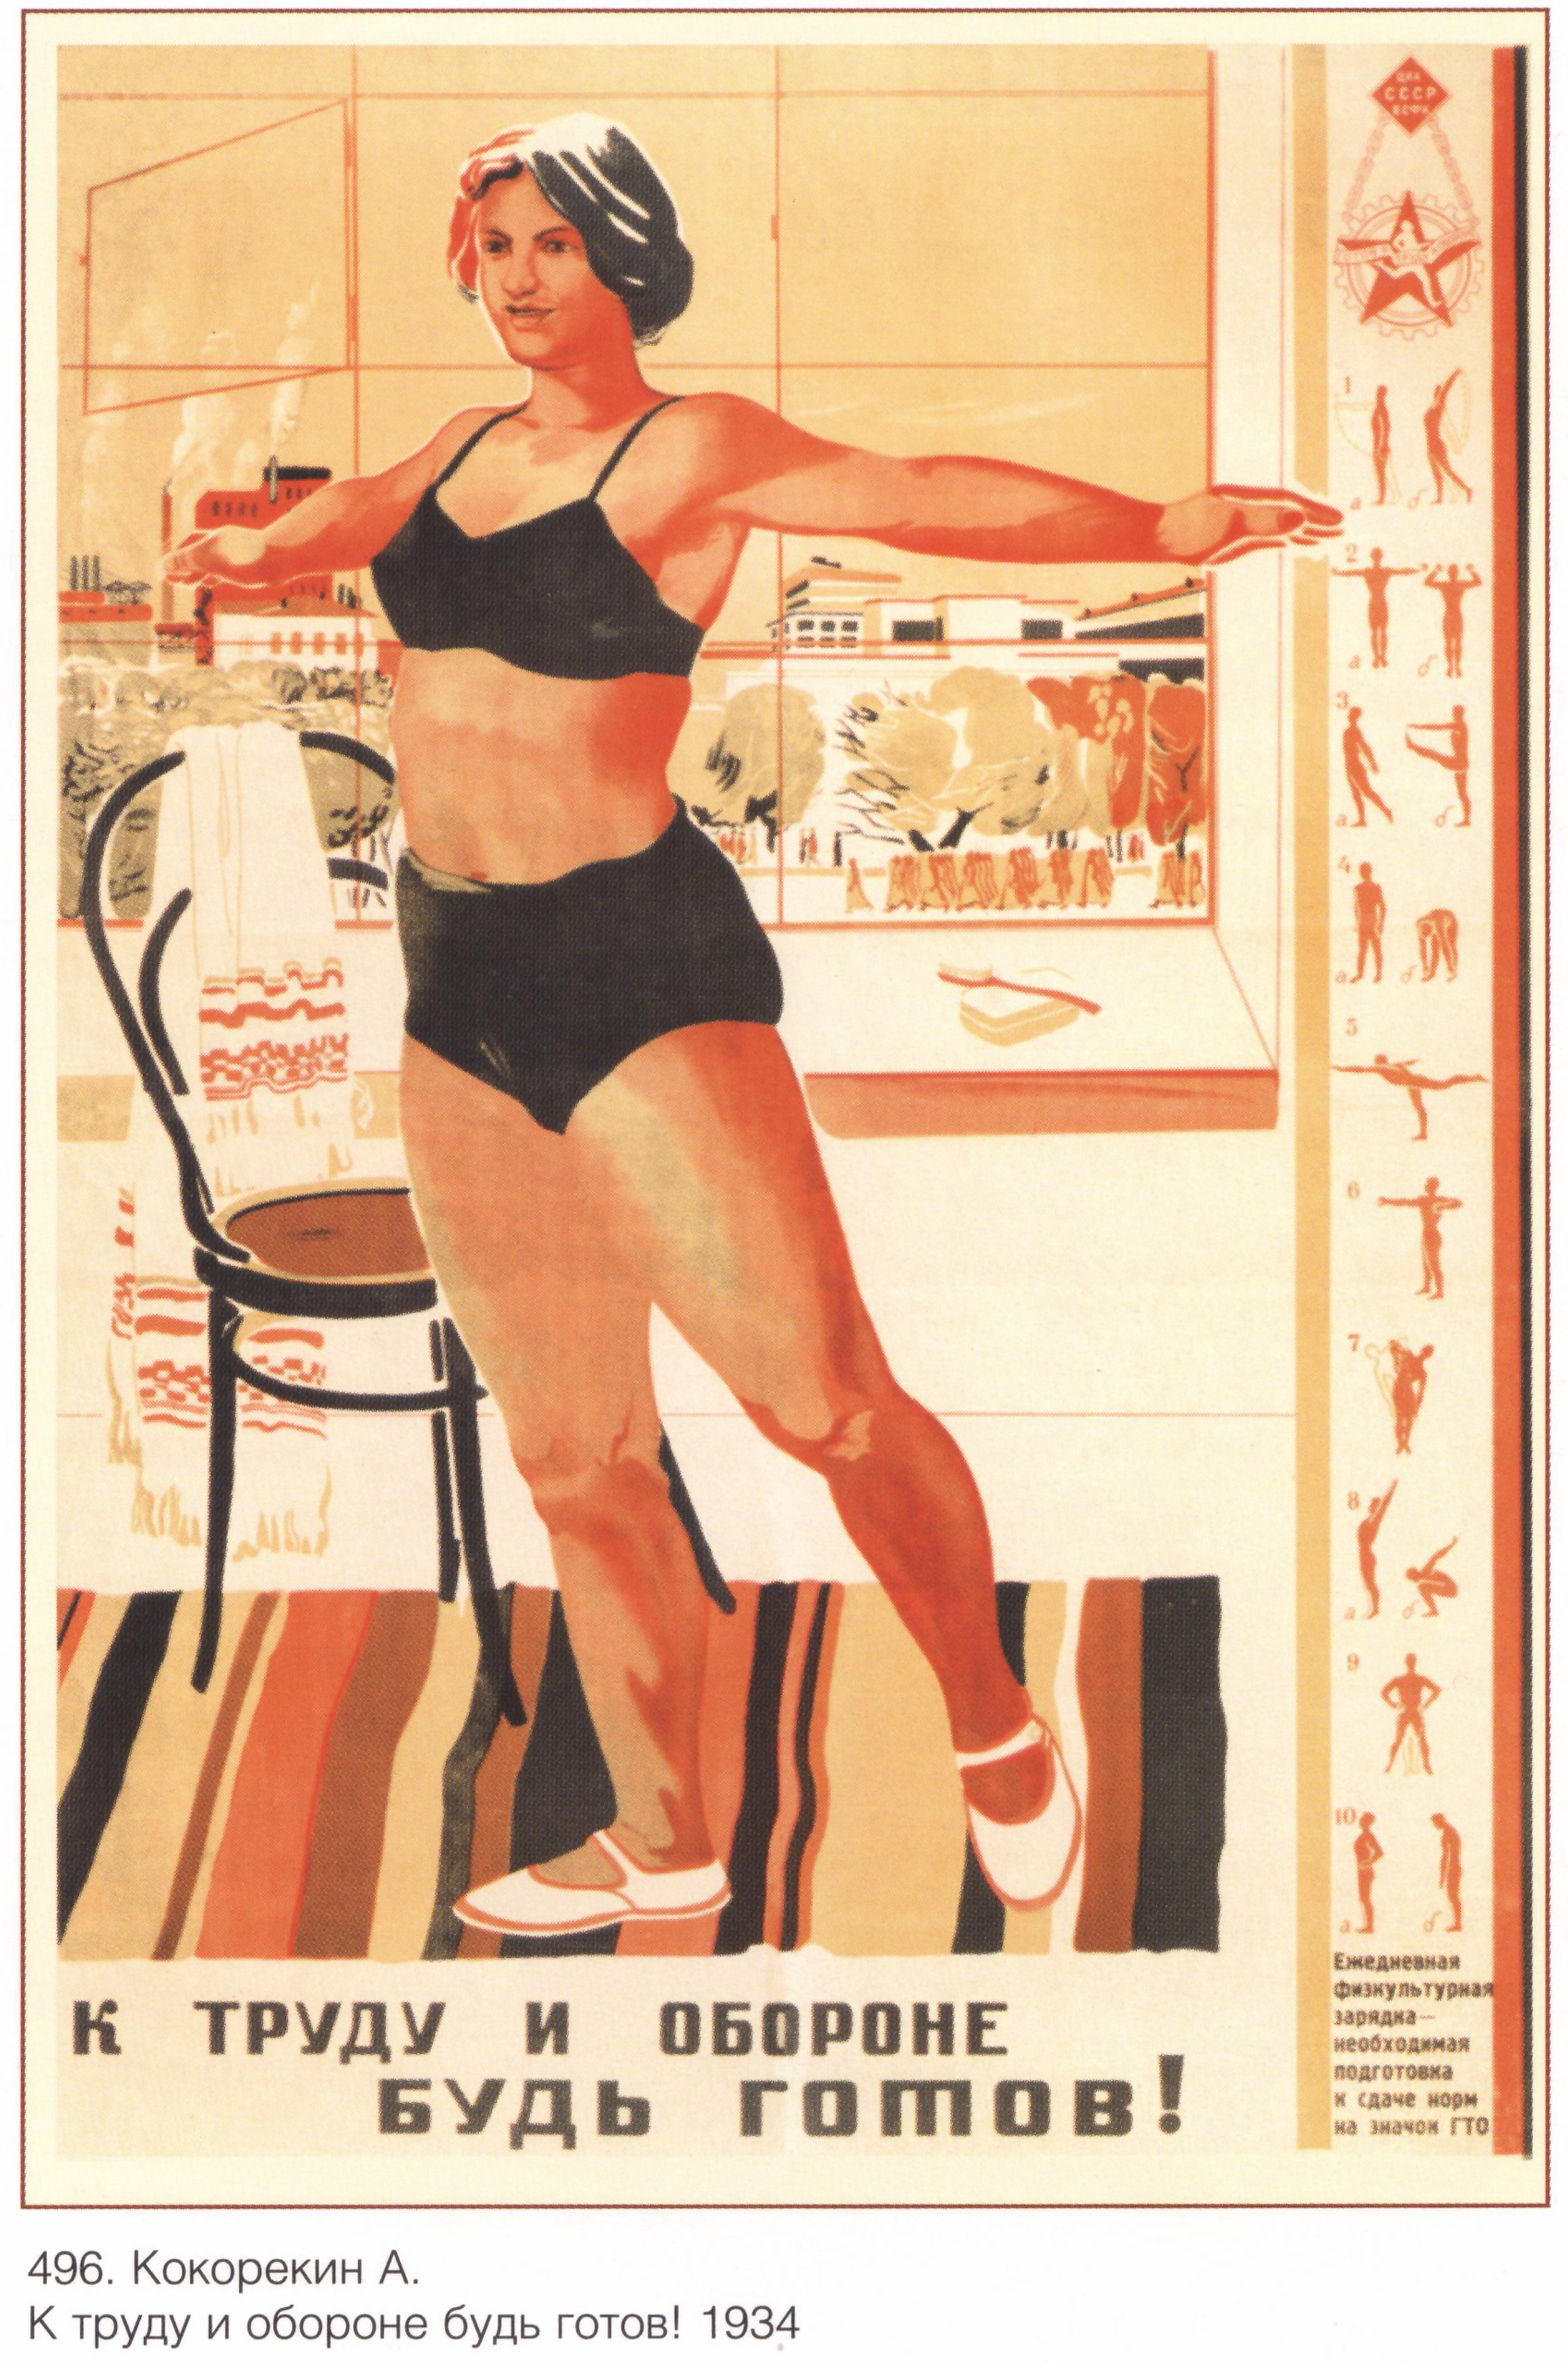 Товарищ время текст. Советские плакаты. Советские агитационные плакаты. Советские cgjhnbdystплакаты.